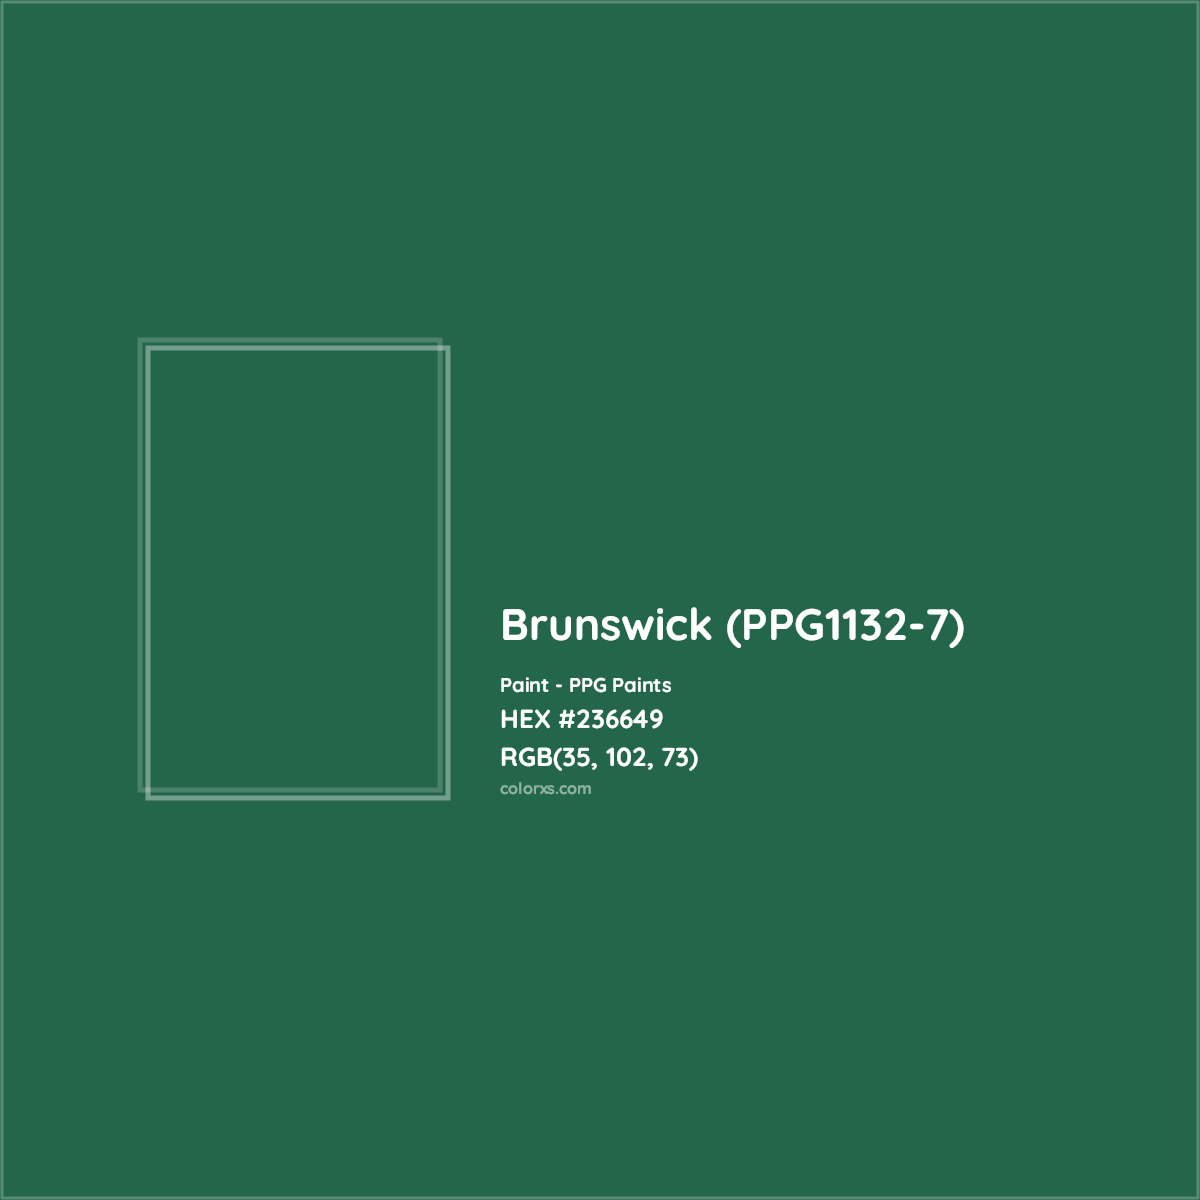 HEX #236649 Brunswick (PPG1132-7) Paint PPG Paints - Color Code